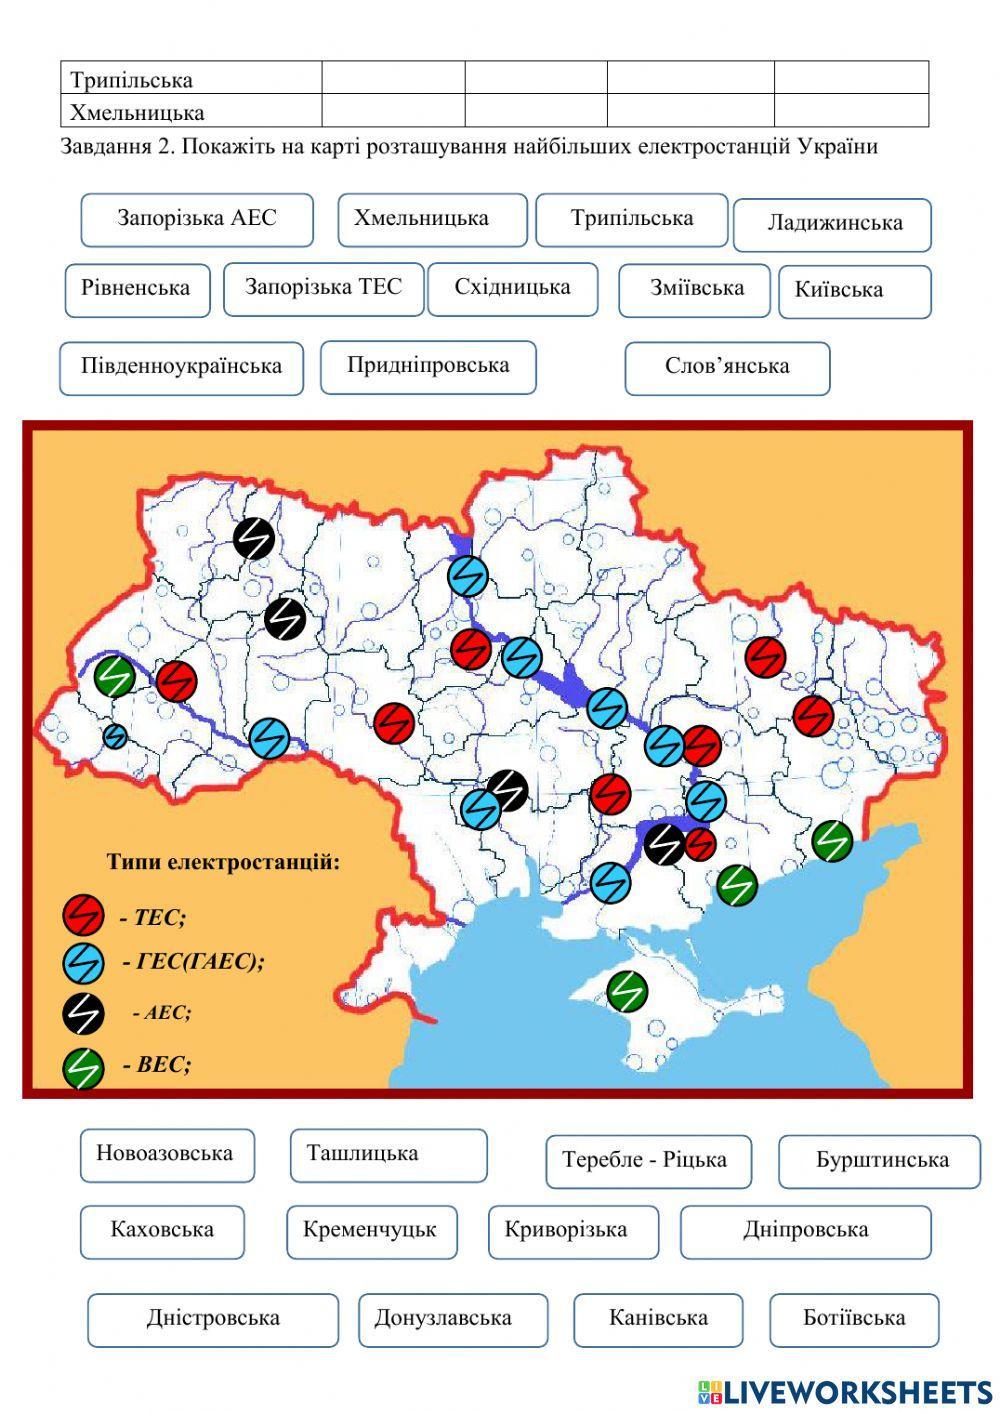 Практична робота №5 Позначення на контурній карті України найбільших електростанцій та пояснення чинників їх розміщення